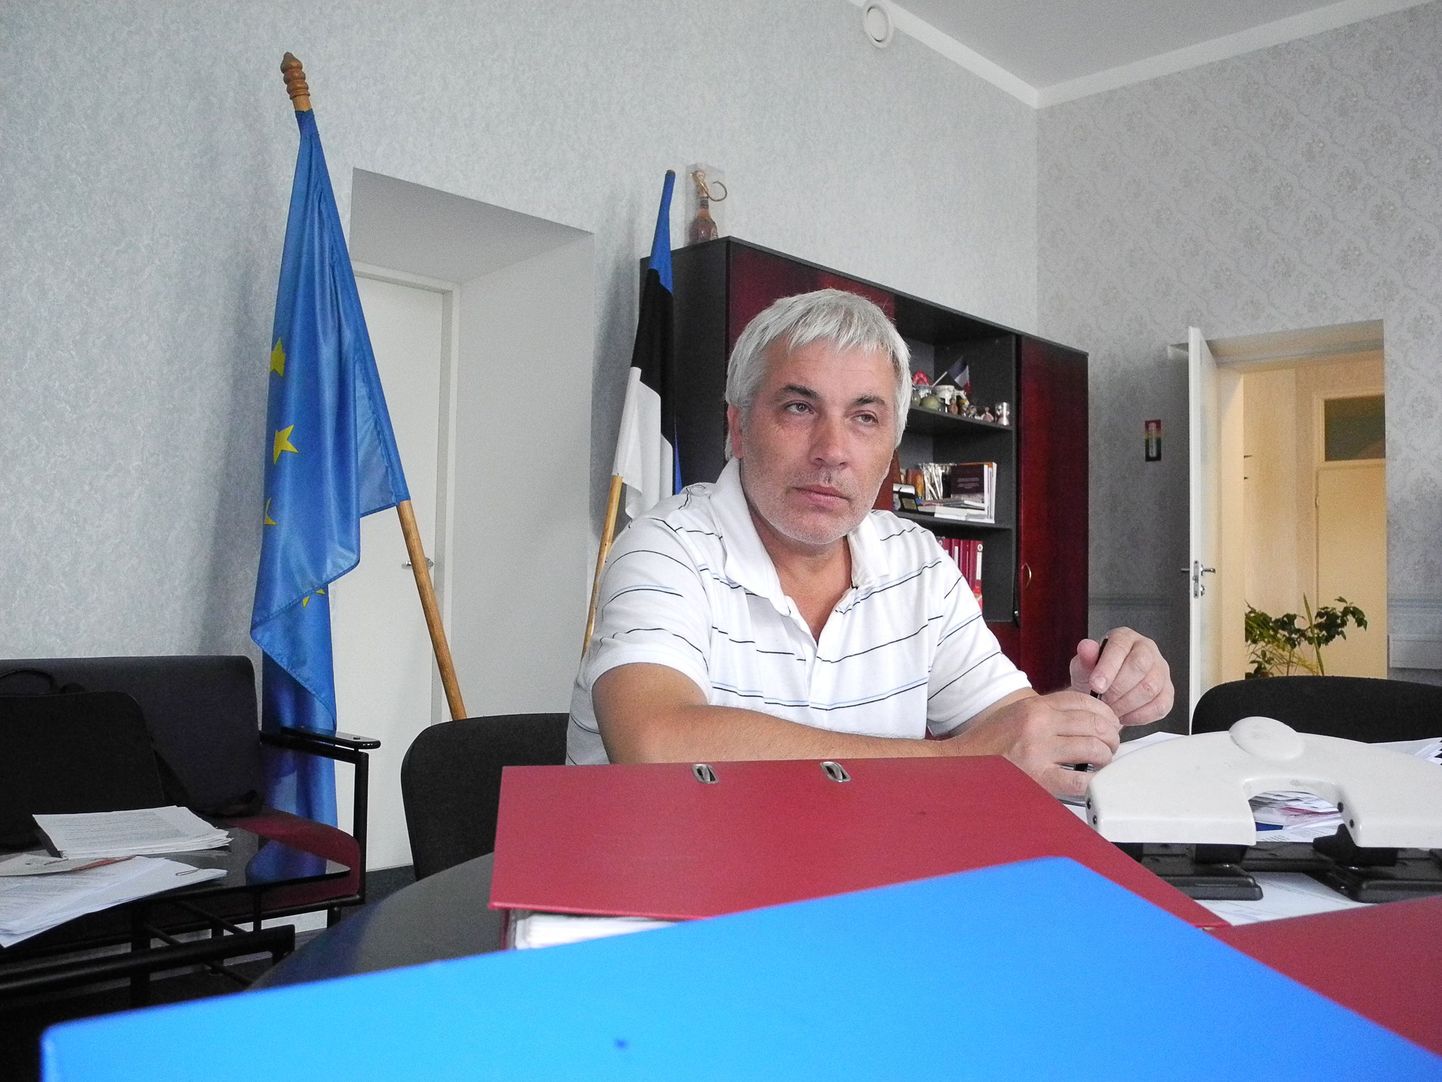 Арно Тимошкин, на этом снимке сфотографированный еще в директорском кабинете, уверен, что его уволили незаконно.